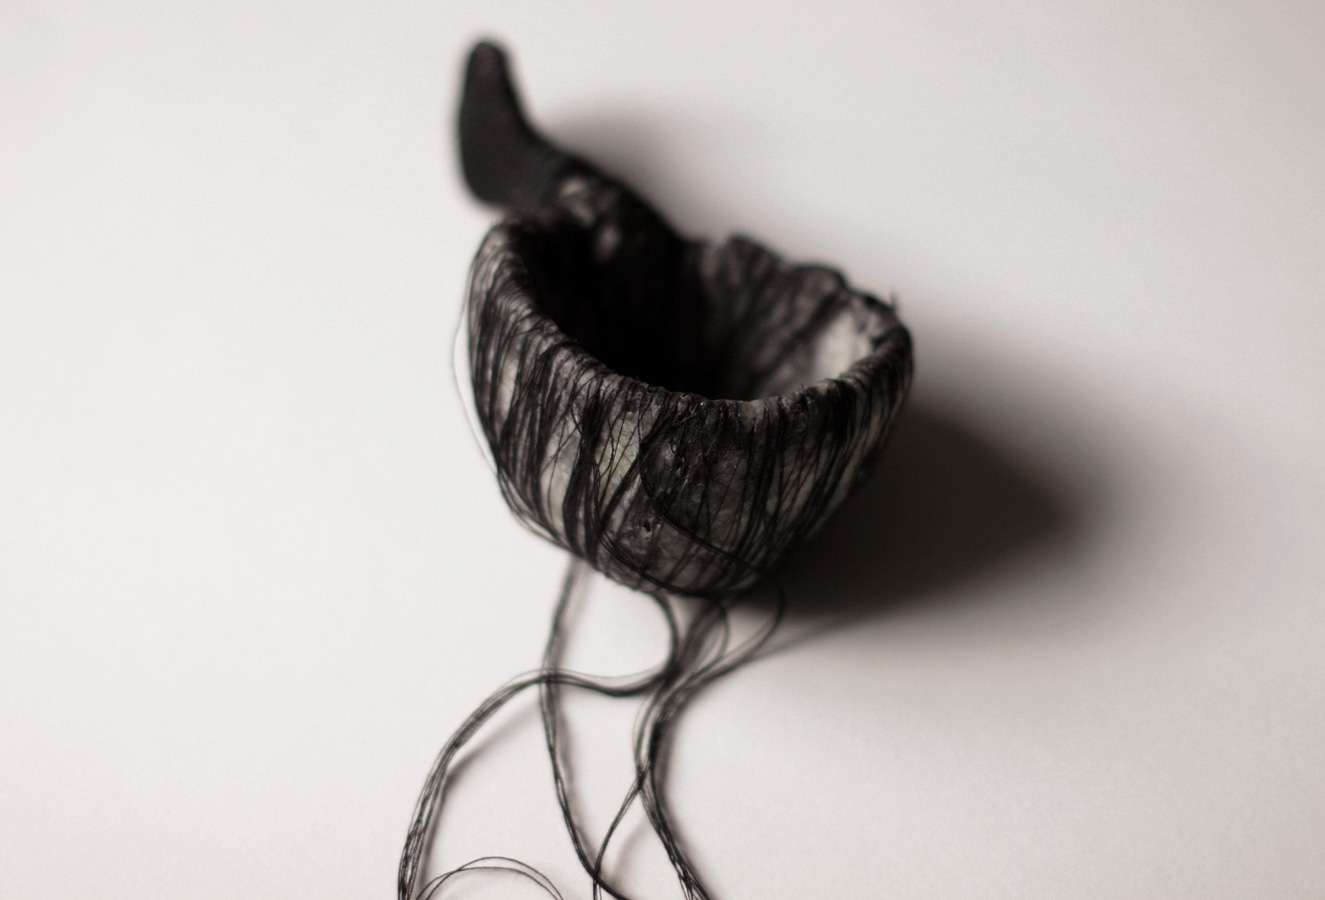 The Black Spoon, 2008. thread, hair, wax, paper & wire.